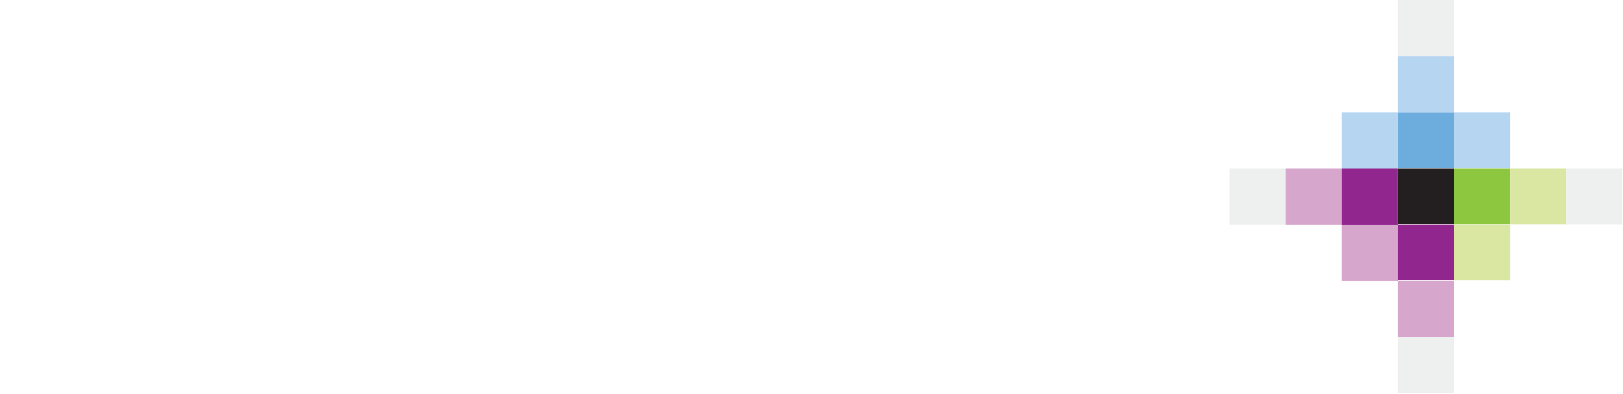 Volaris
 Logo groß für dunkle Hintergründe (transparentes PNG)